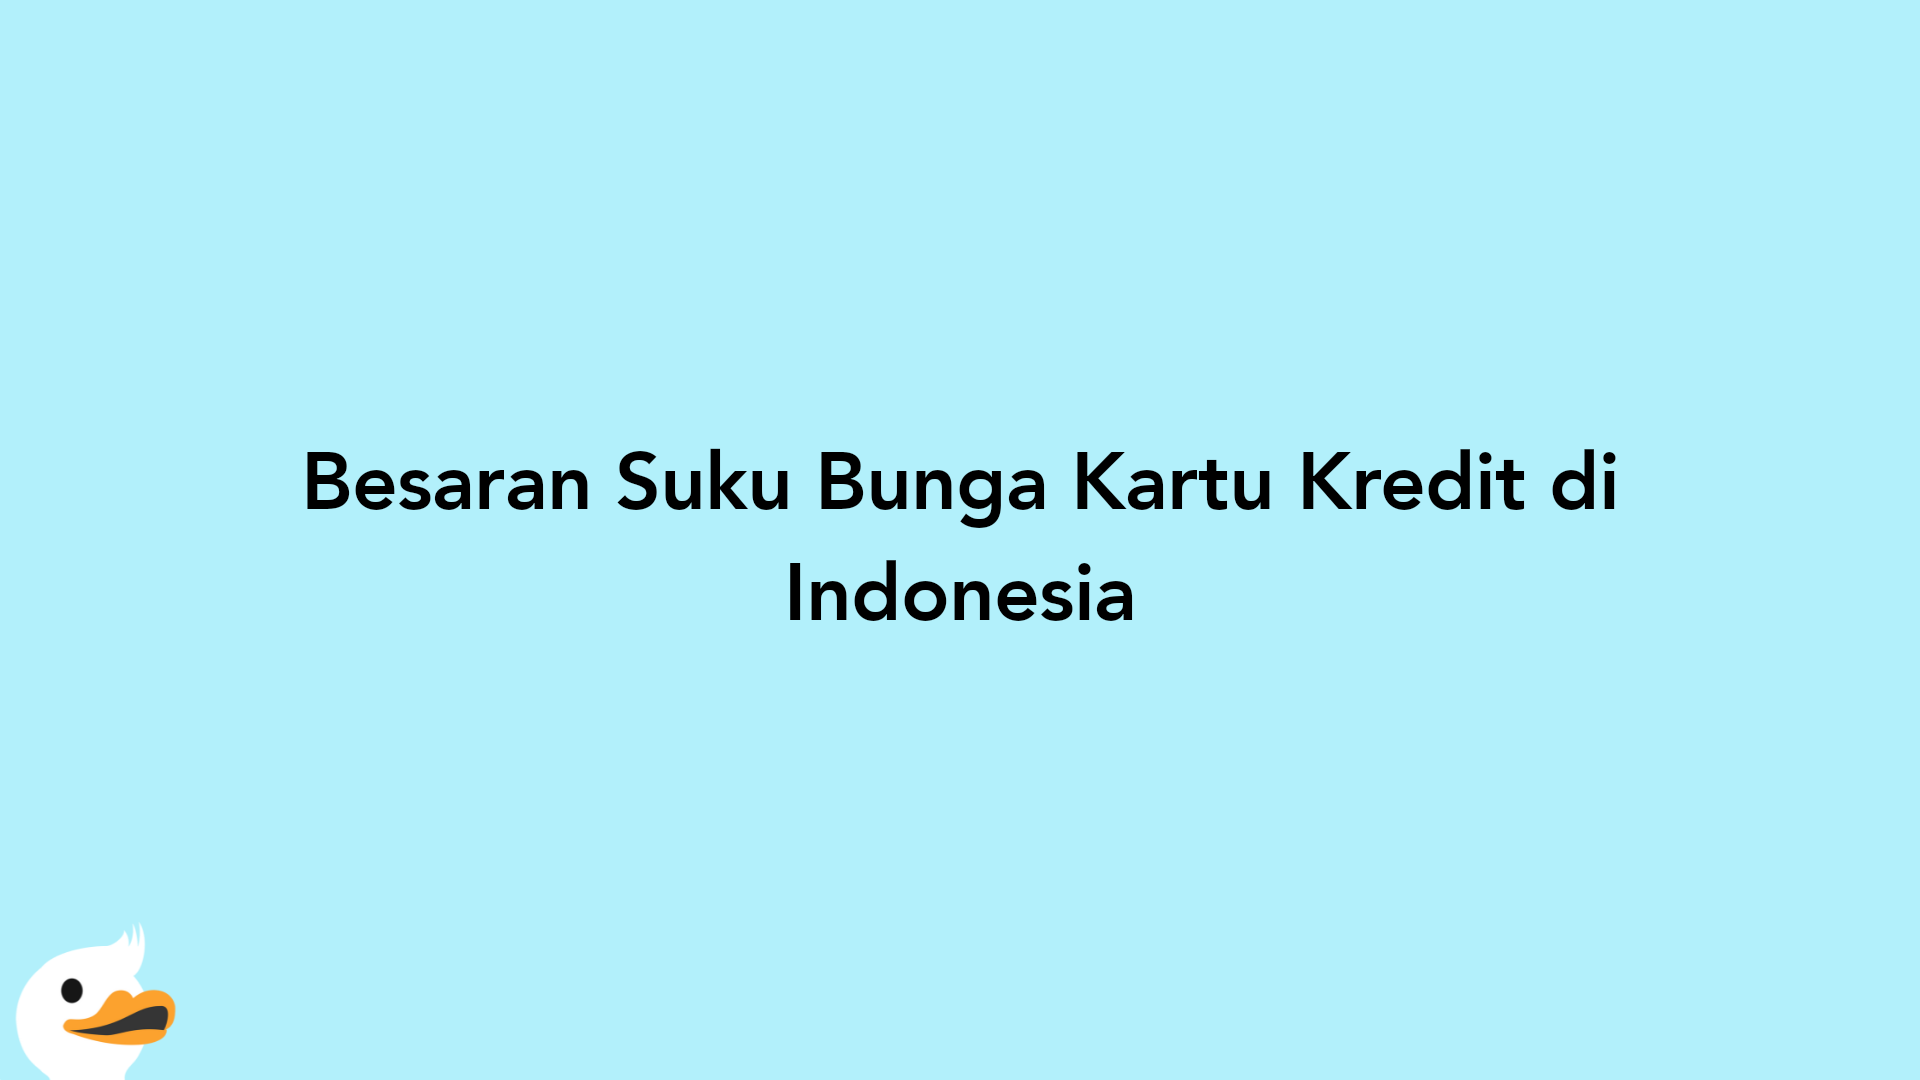 Besaran Suku Bunga Kartu Kredit di Indonesia